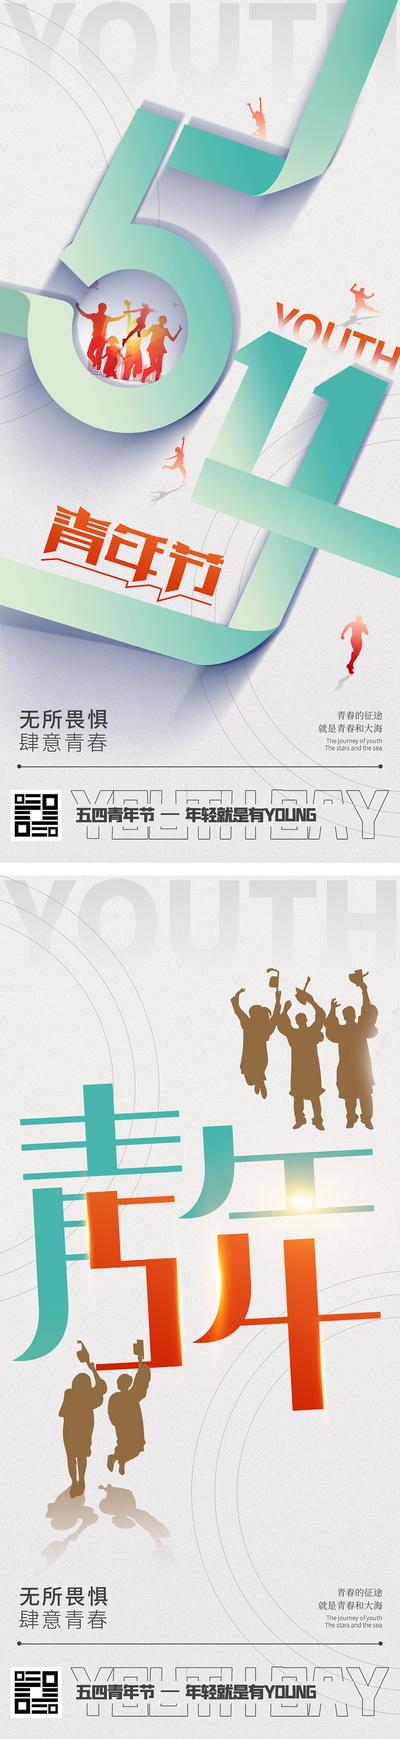 南门网 广告 海报 大字报 青年节 创意 公历节日 54 青春 五四 年轻人 活力 激情 潮流 简约 高级 文字